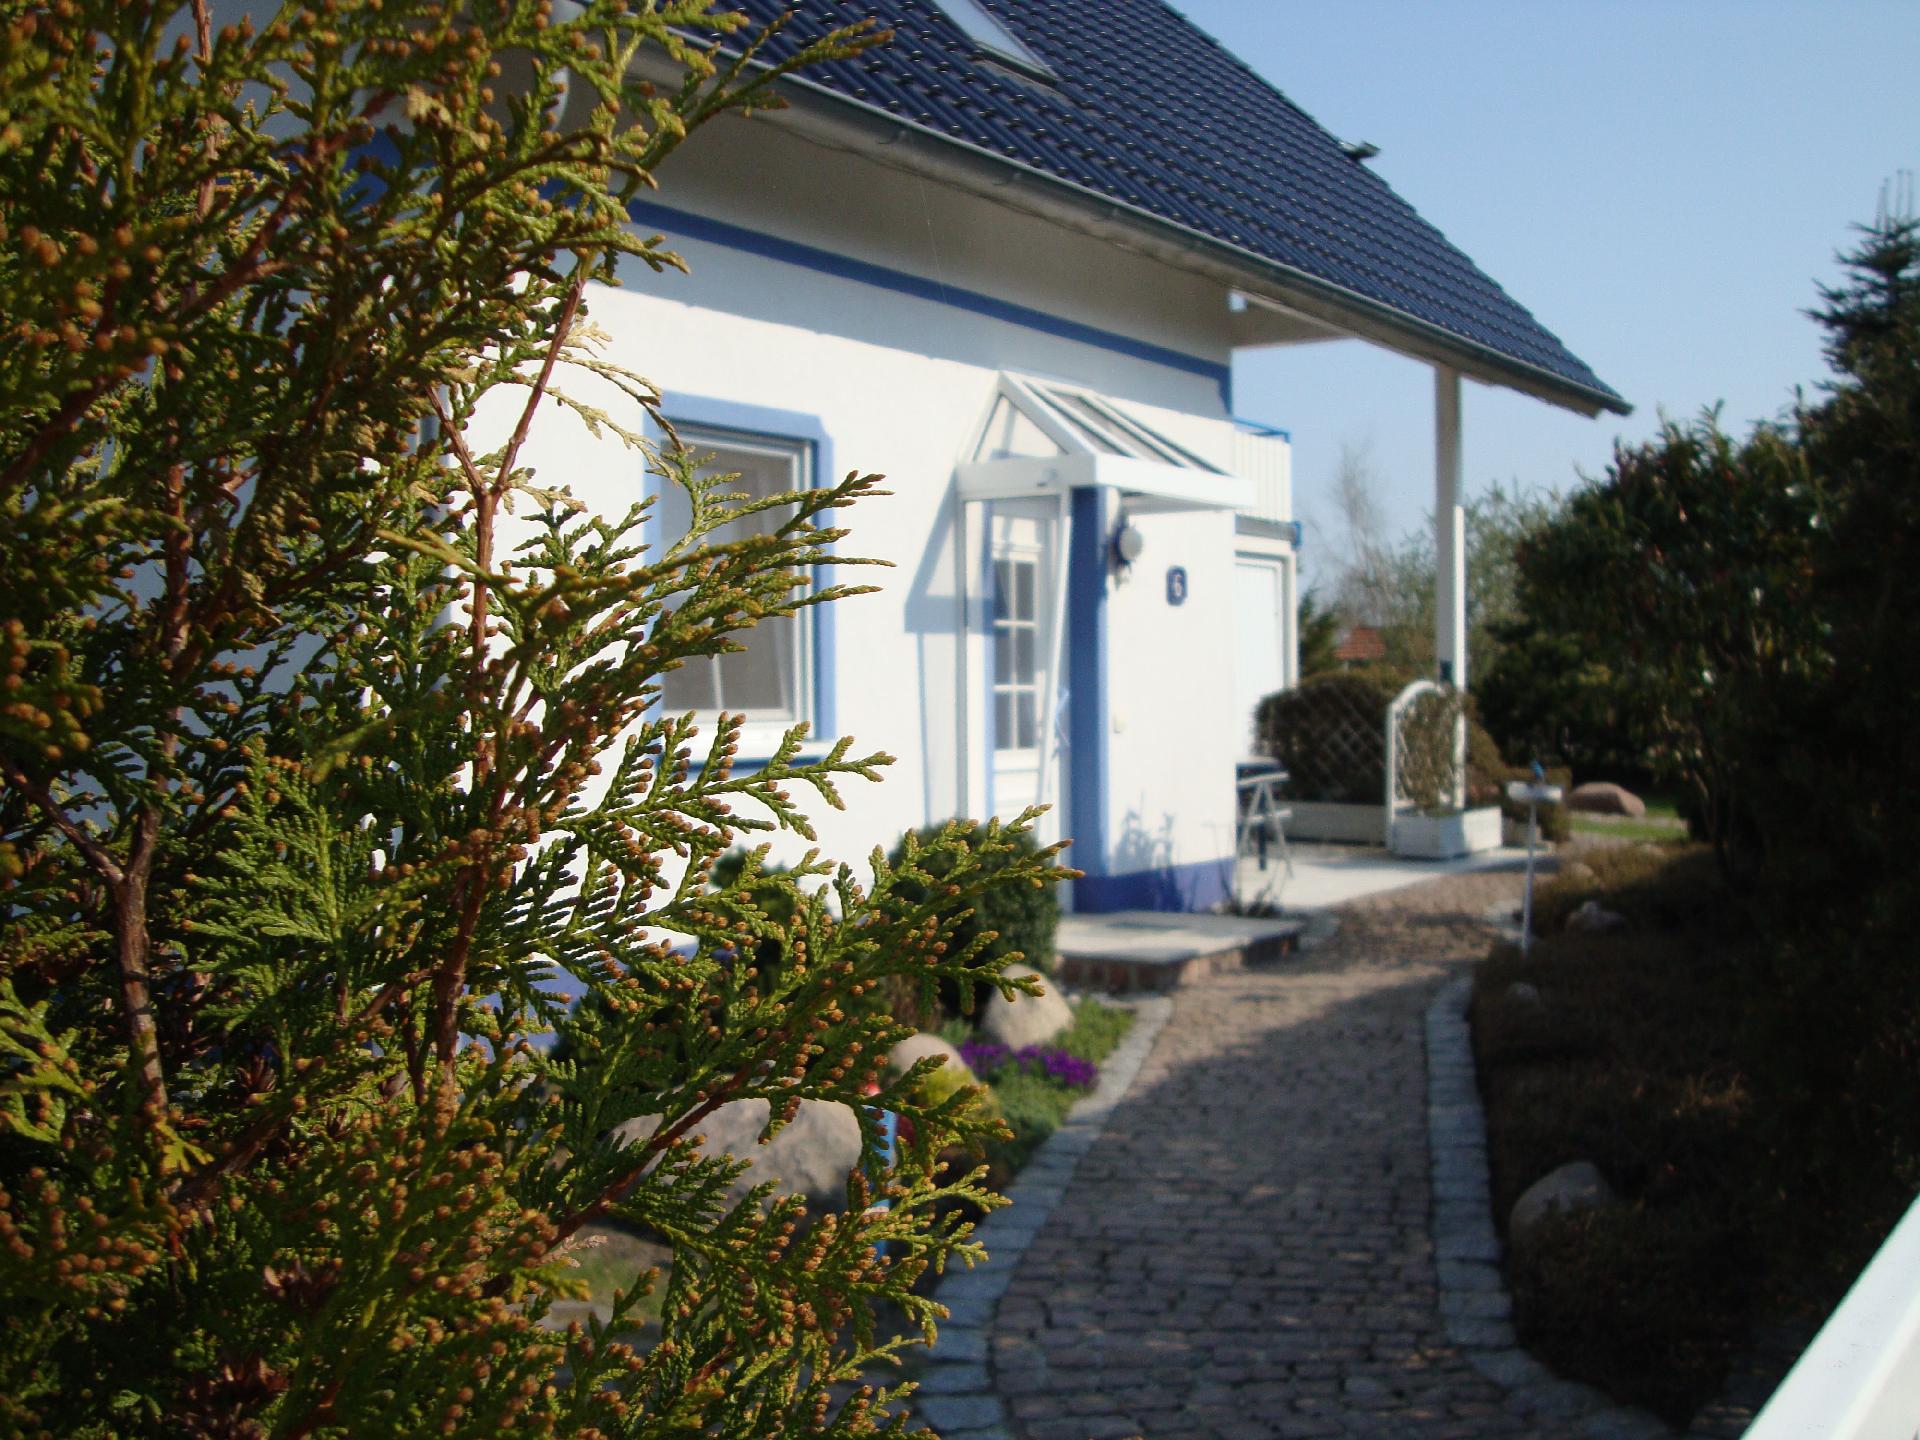 Komfortable Ferienwohnung mit sonniger Terrasse un Ferienhaus in Mecklenburg Vorpommern